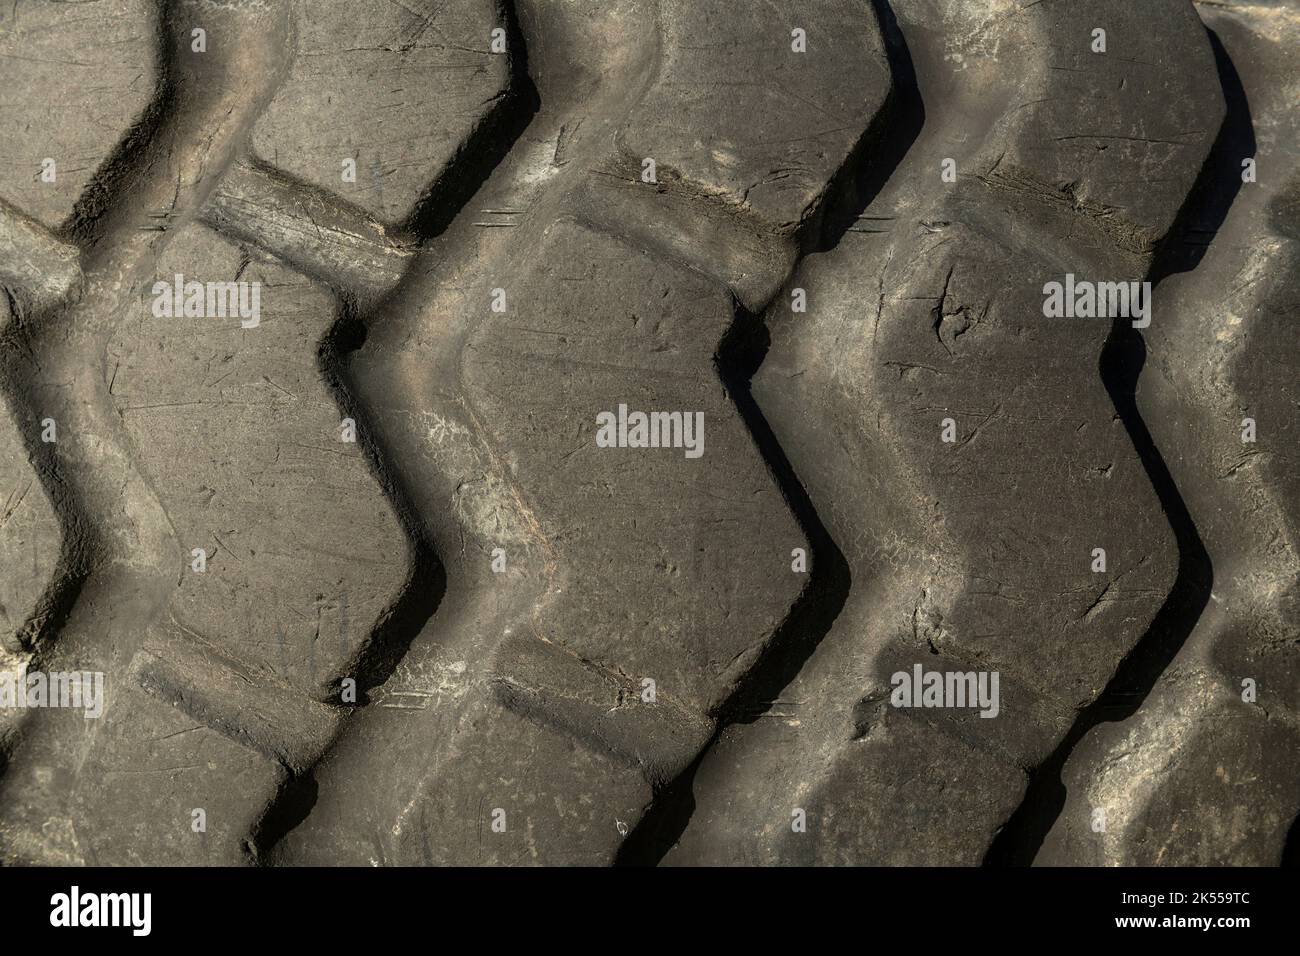 Modèle de pneu usé - photo de stock Banque D'Images